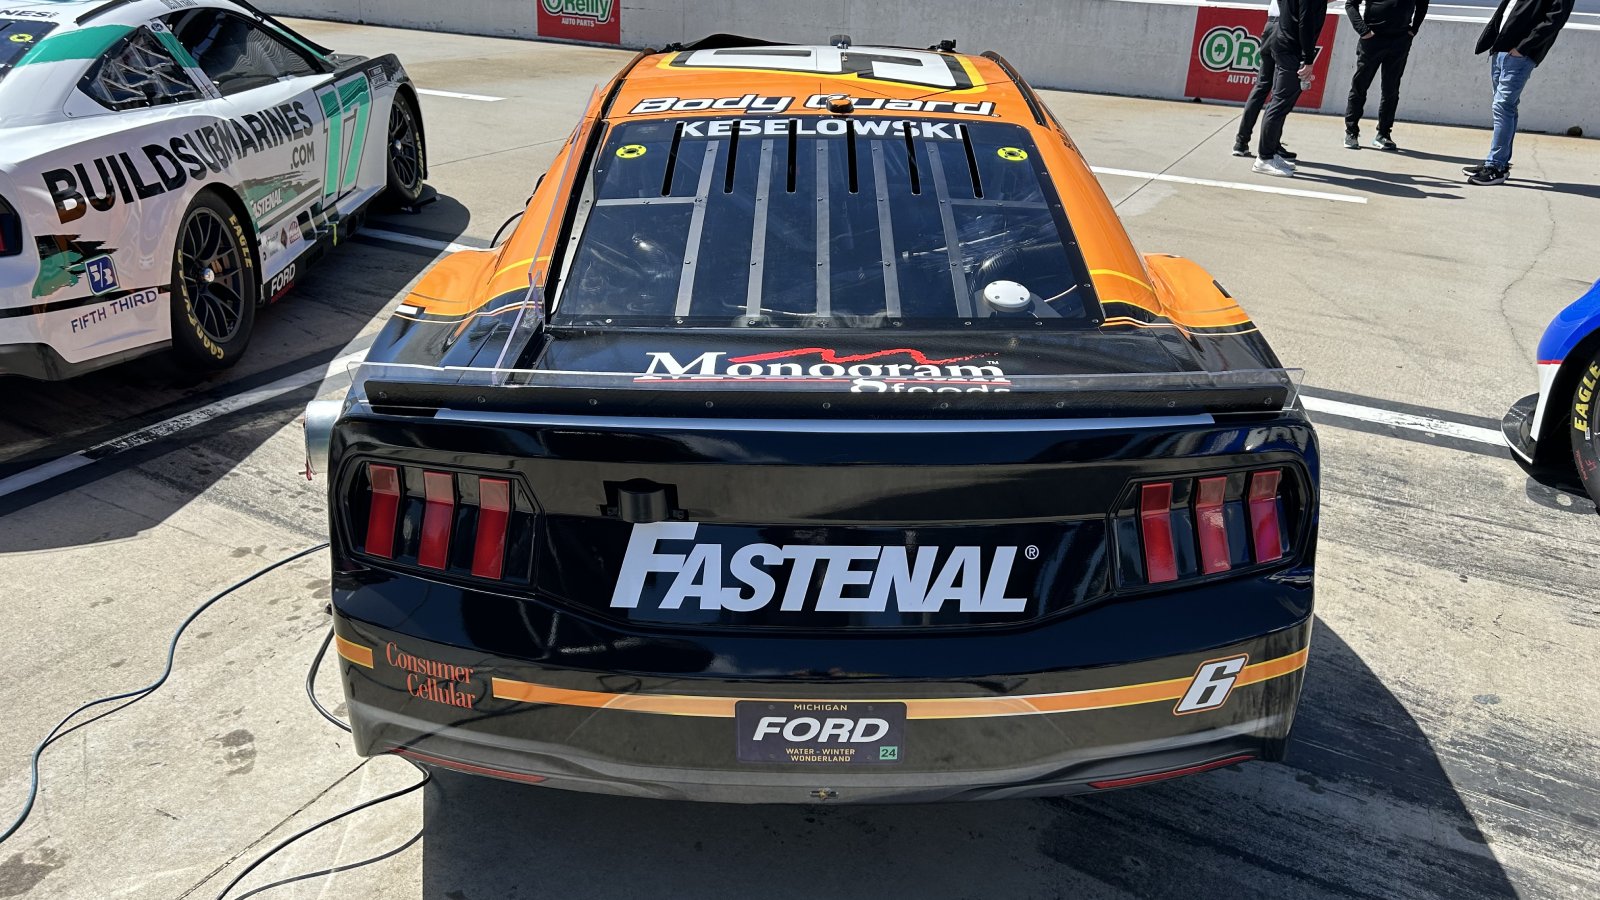 Brad Keselowski 2024 Fastenal Body Guard paint scheme RFK Racing NASCAR Cup Series